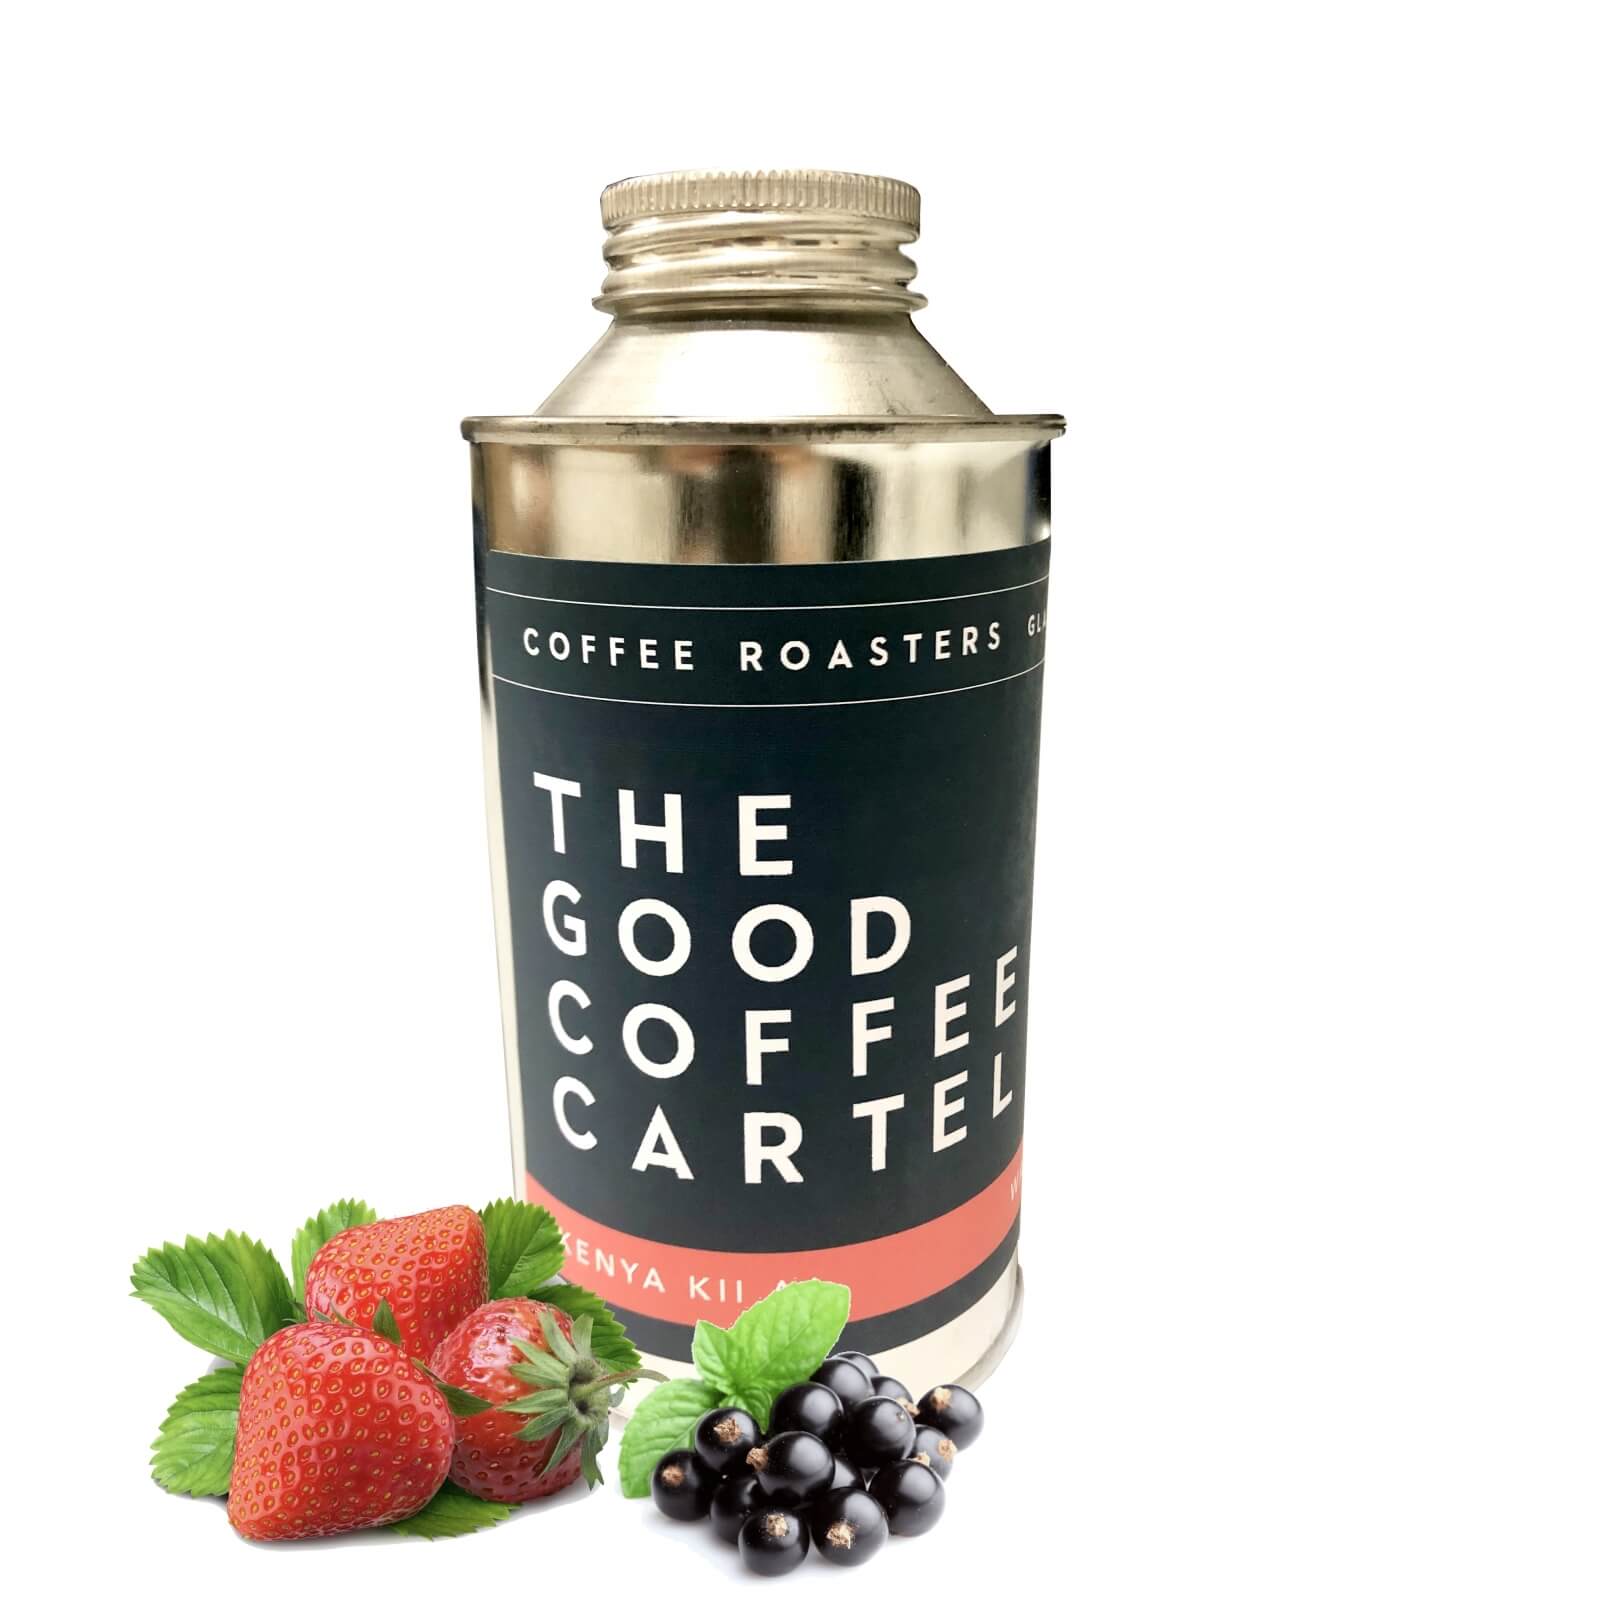 Výběrová káva The Good Coffee Cartel Keňa KII